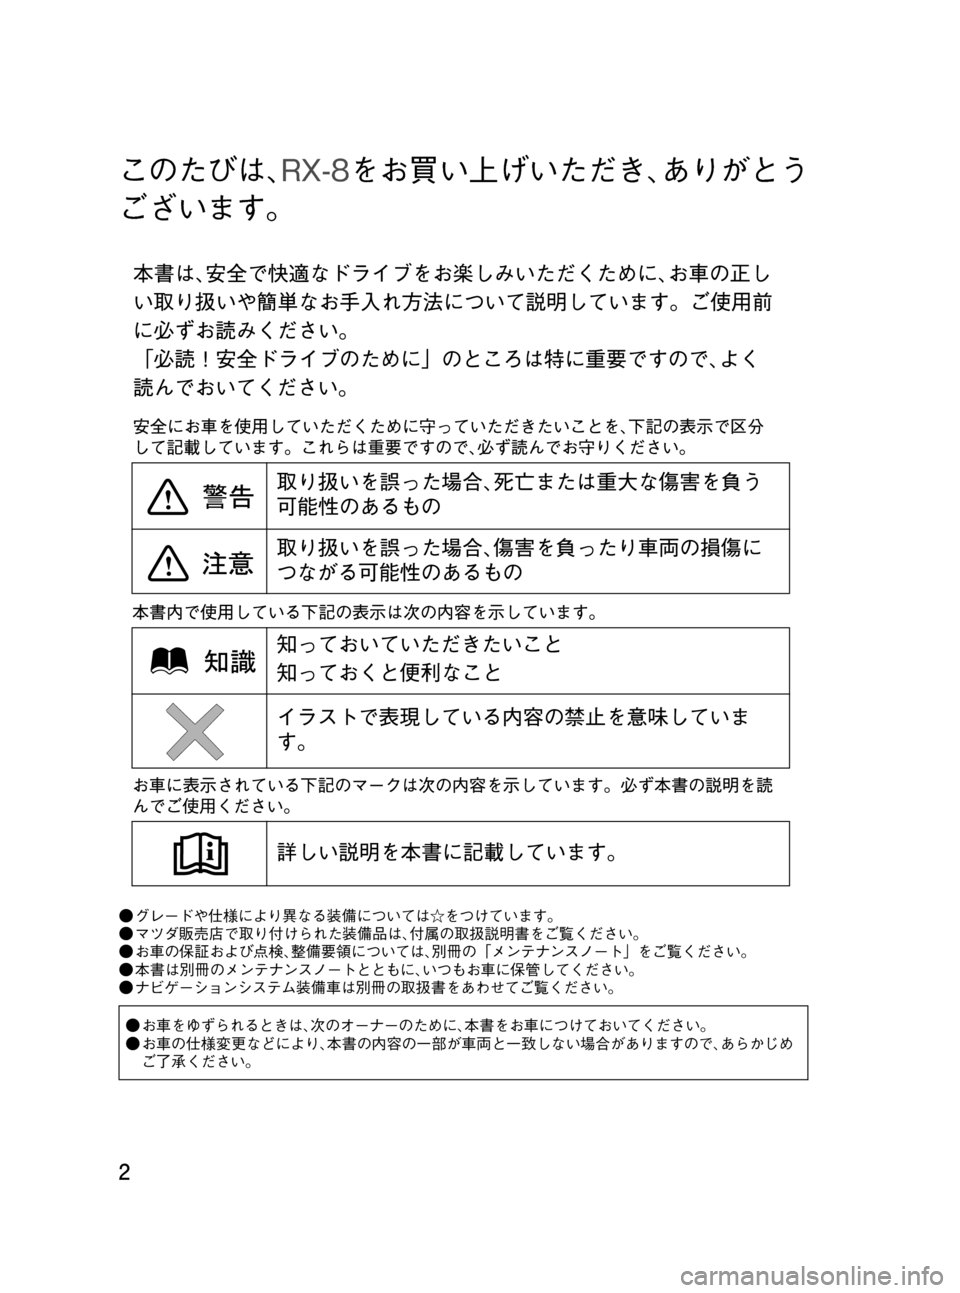 MAZDA MODEL RX 8 2008  取扱説明書 (in Japanese) Black plate (2,1)
このたびは､RX-8をお買い上げいただき､ありがとう
ございます。
●グレードや仕様により異なる装備については☆をつけています。
�